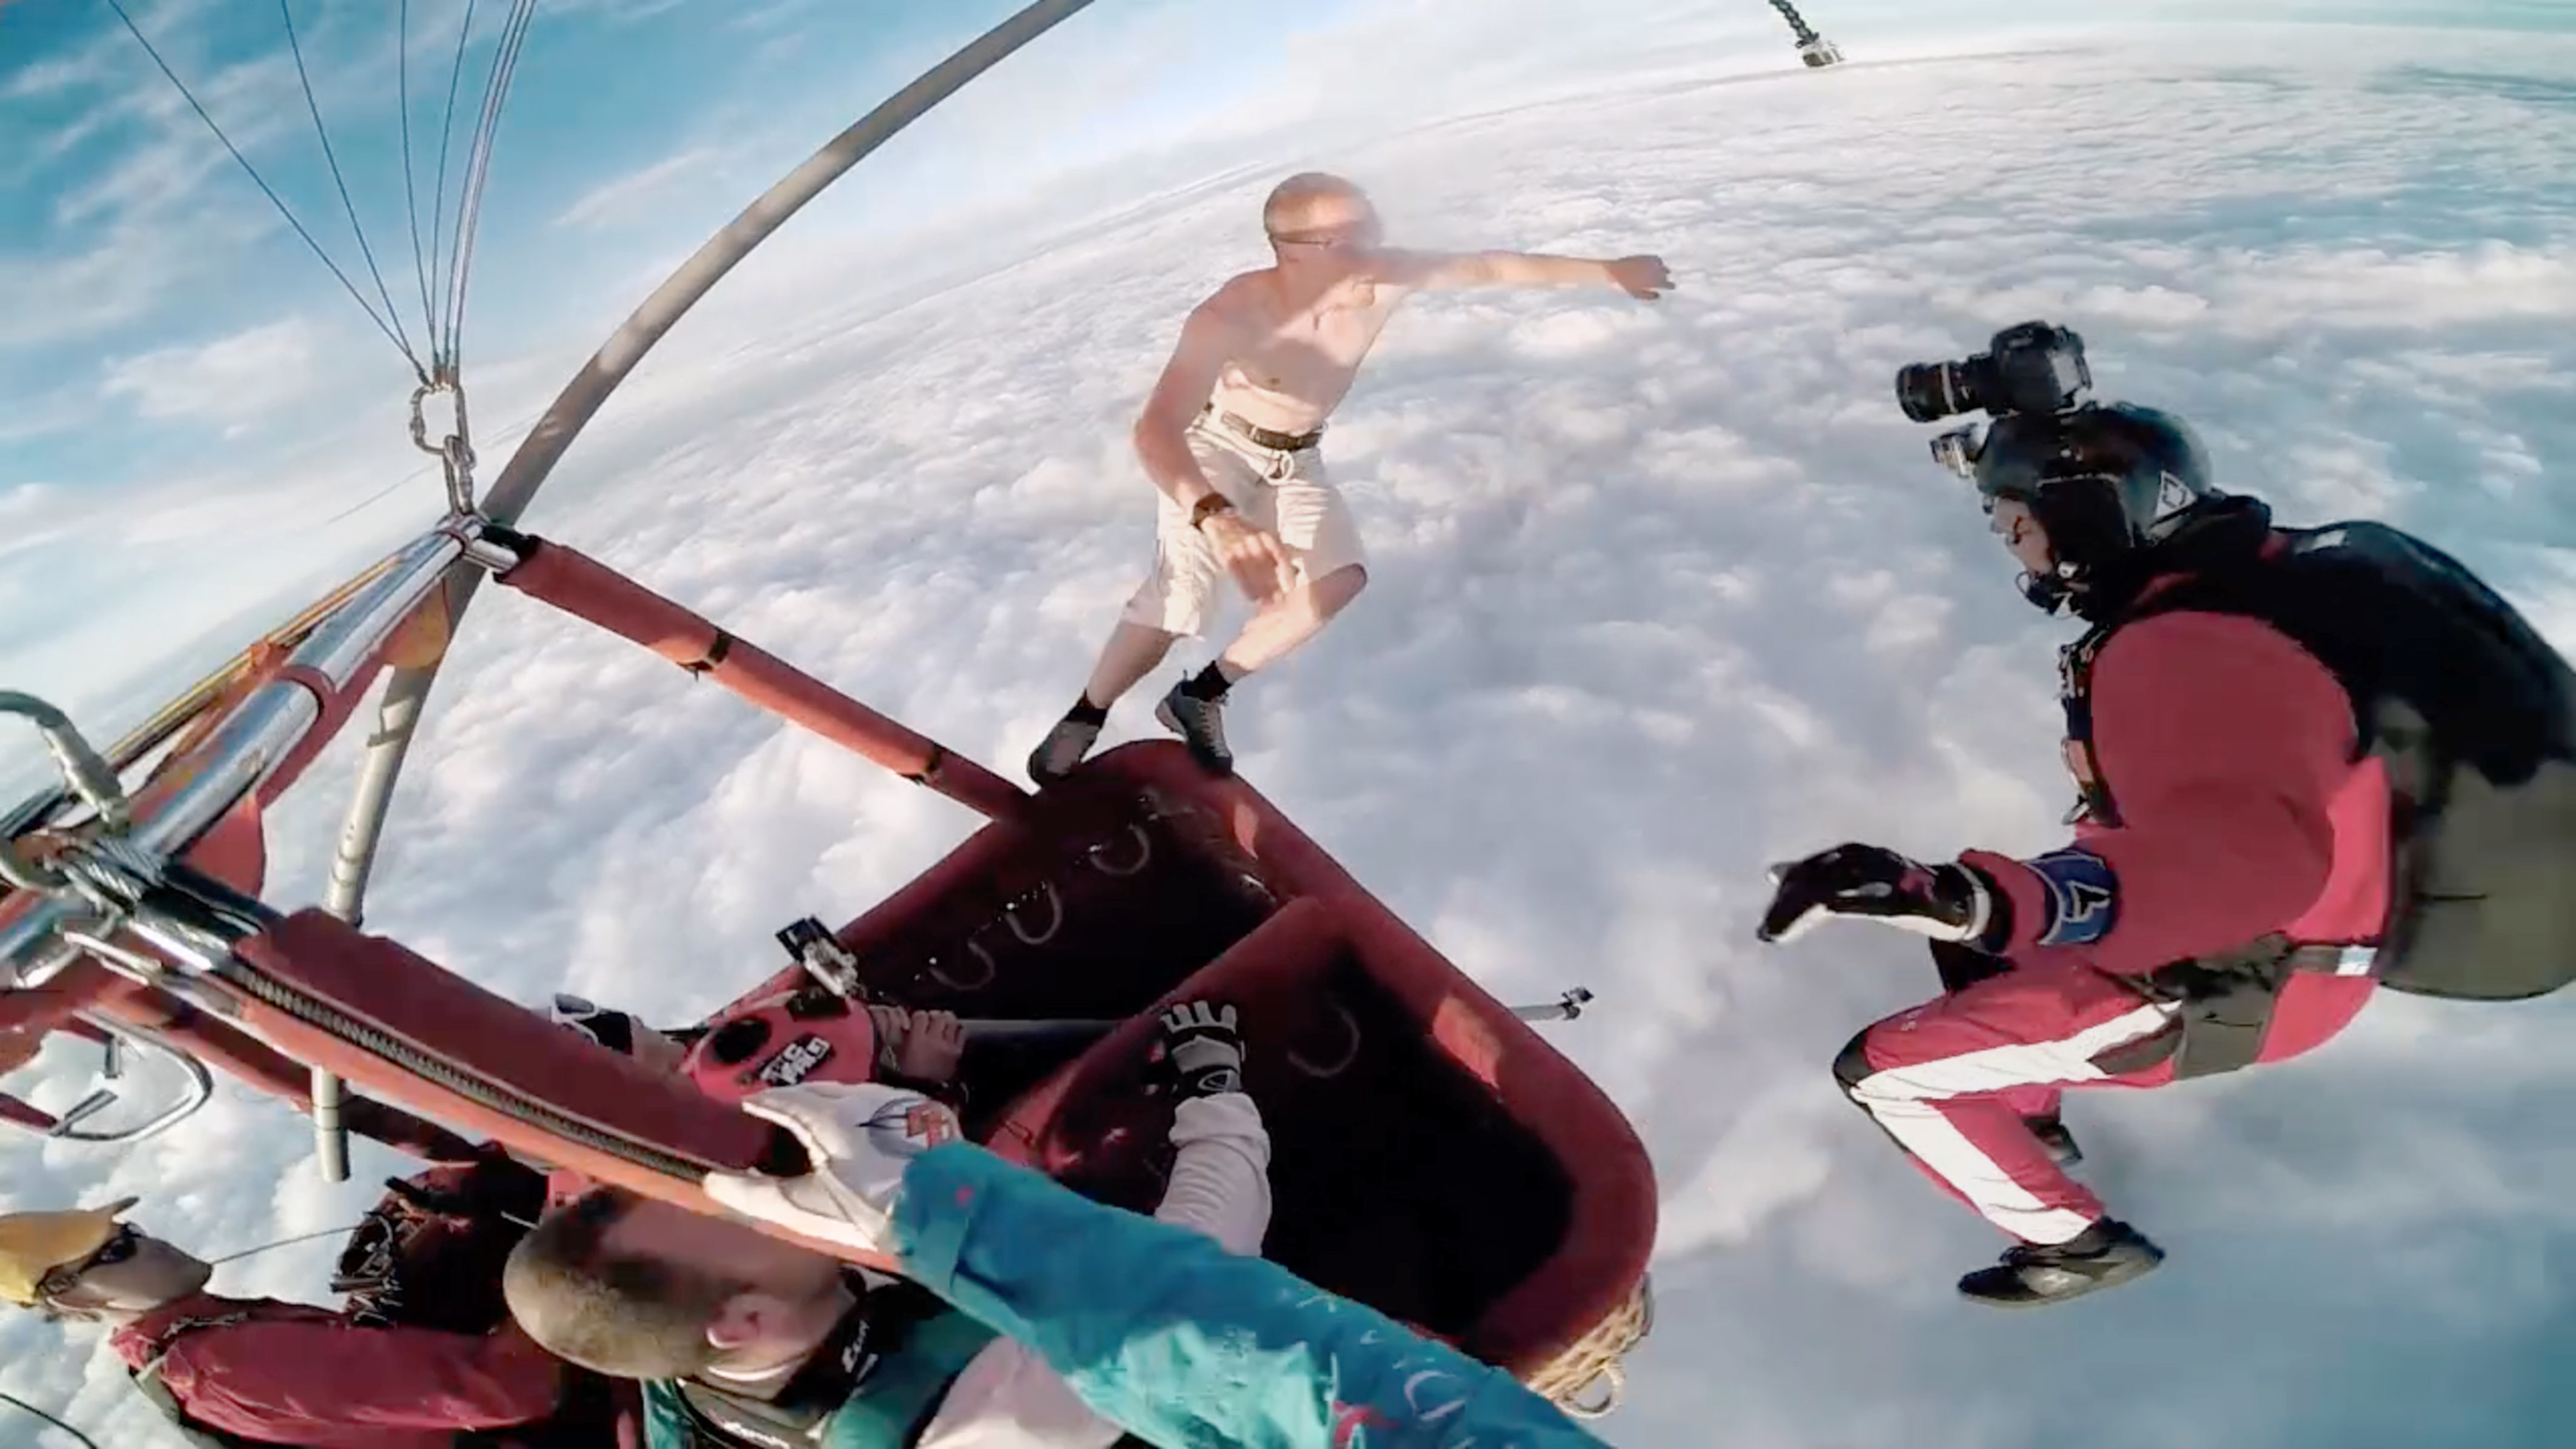 パラシュートなしのスカイダイビングは超クレイジー 「全く怖くない」と無謀な男は言う。 | ハフポスト